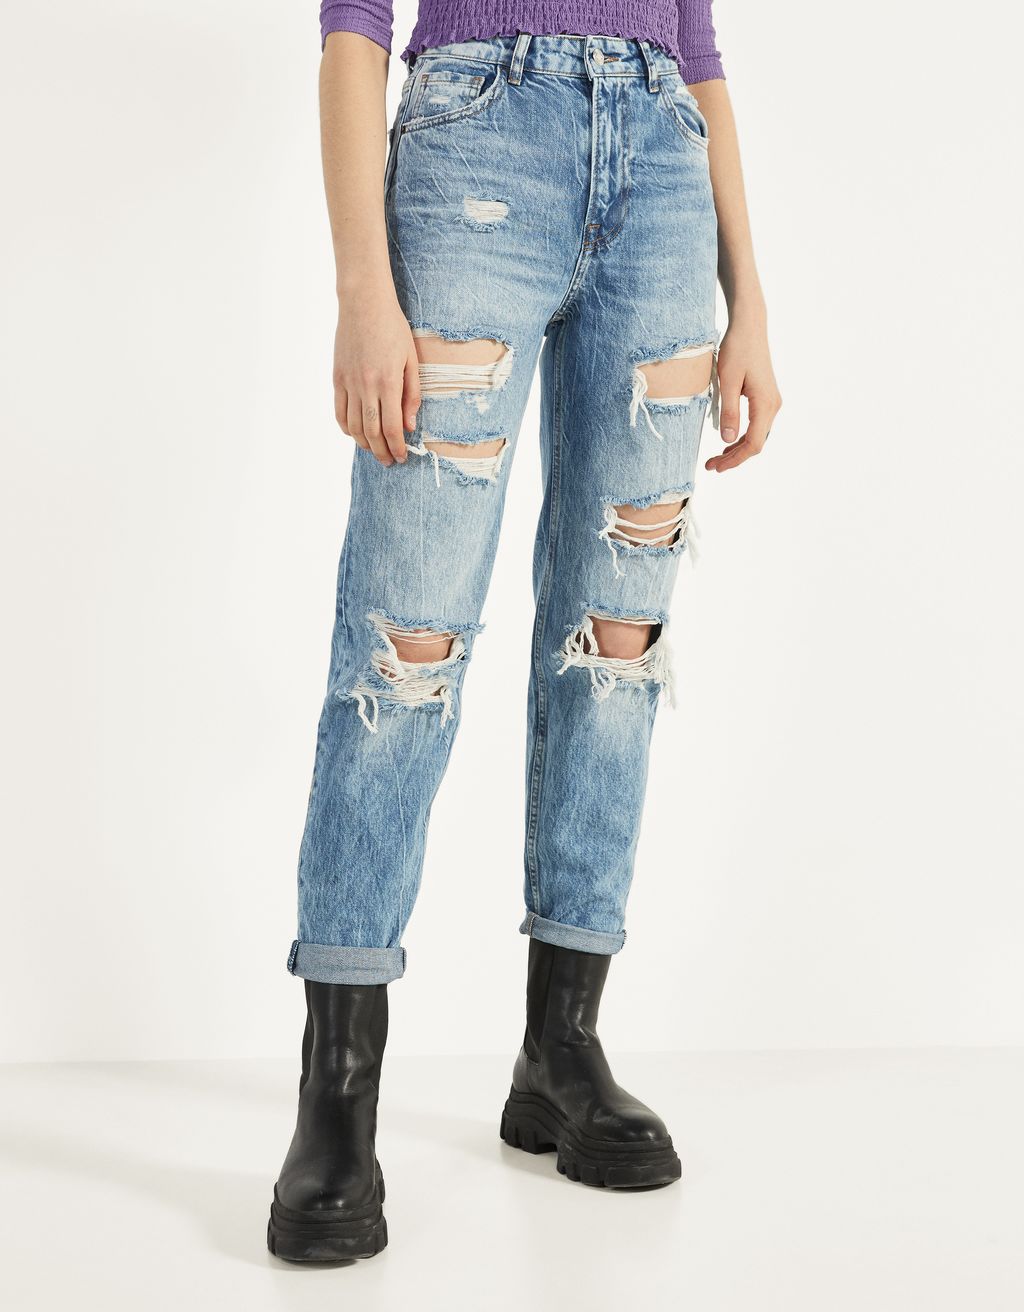 Ongebruikt Jeans voor Dames - Collectie Lente 2020 | Bershka IF-33